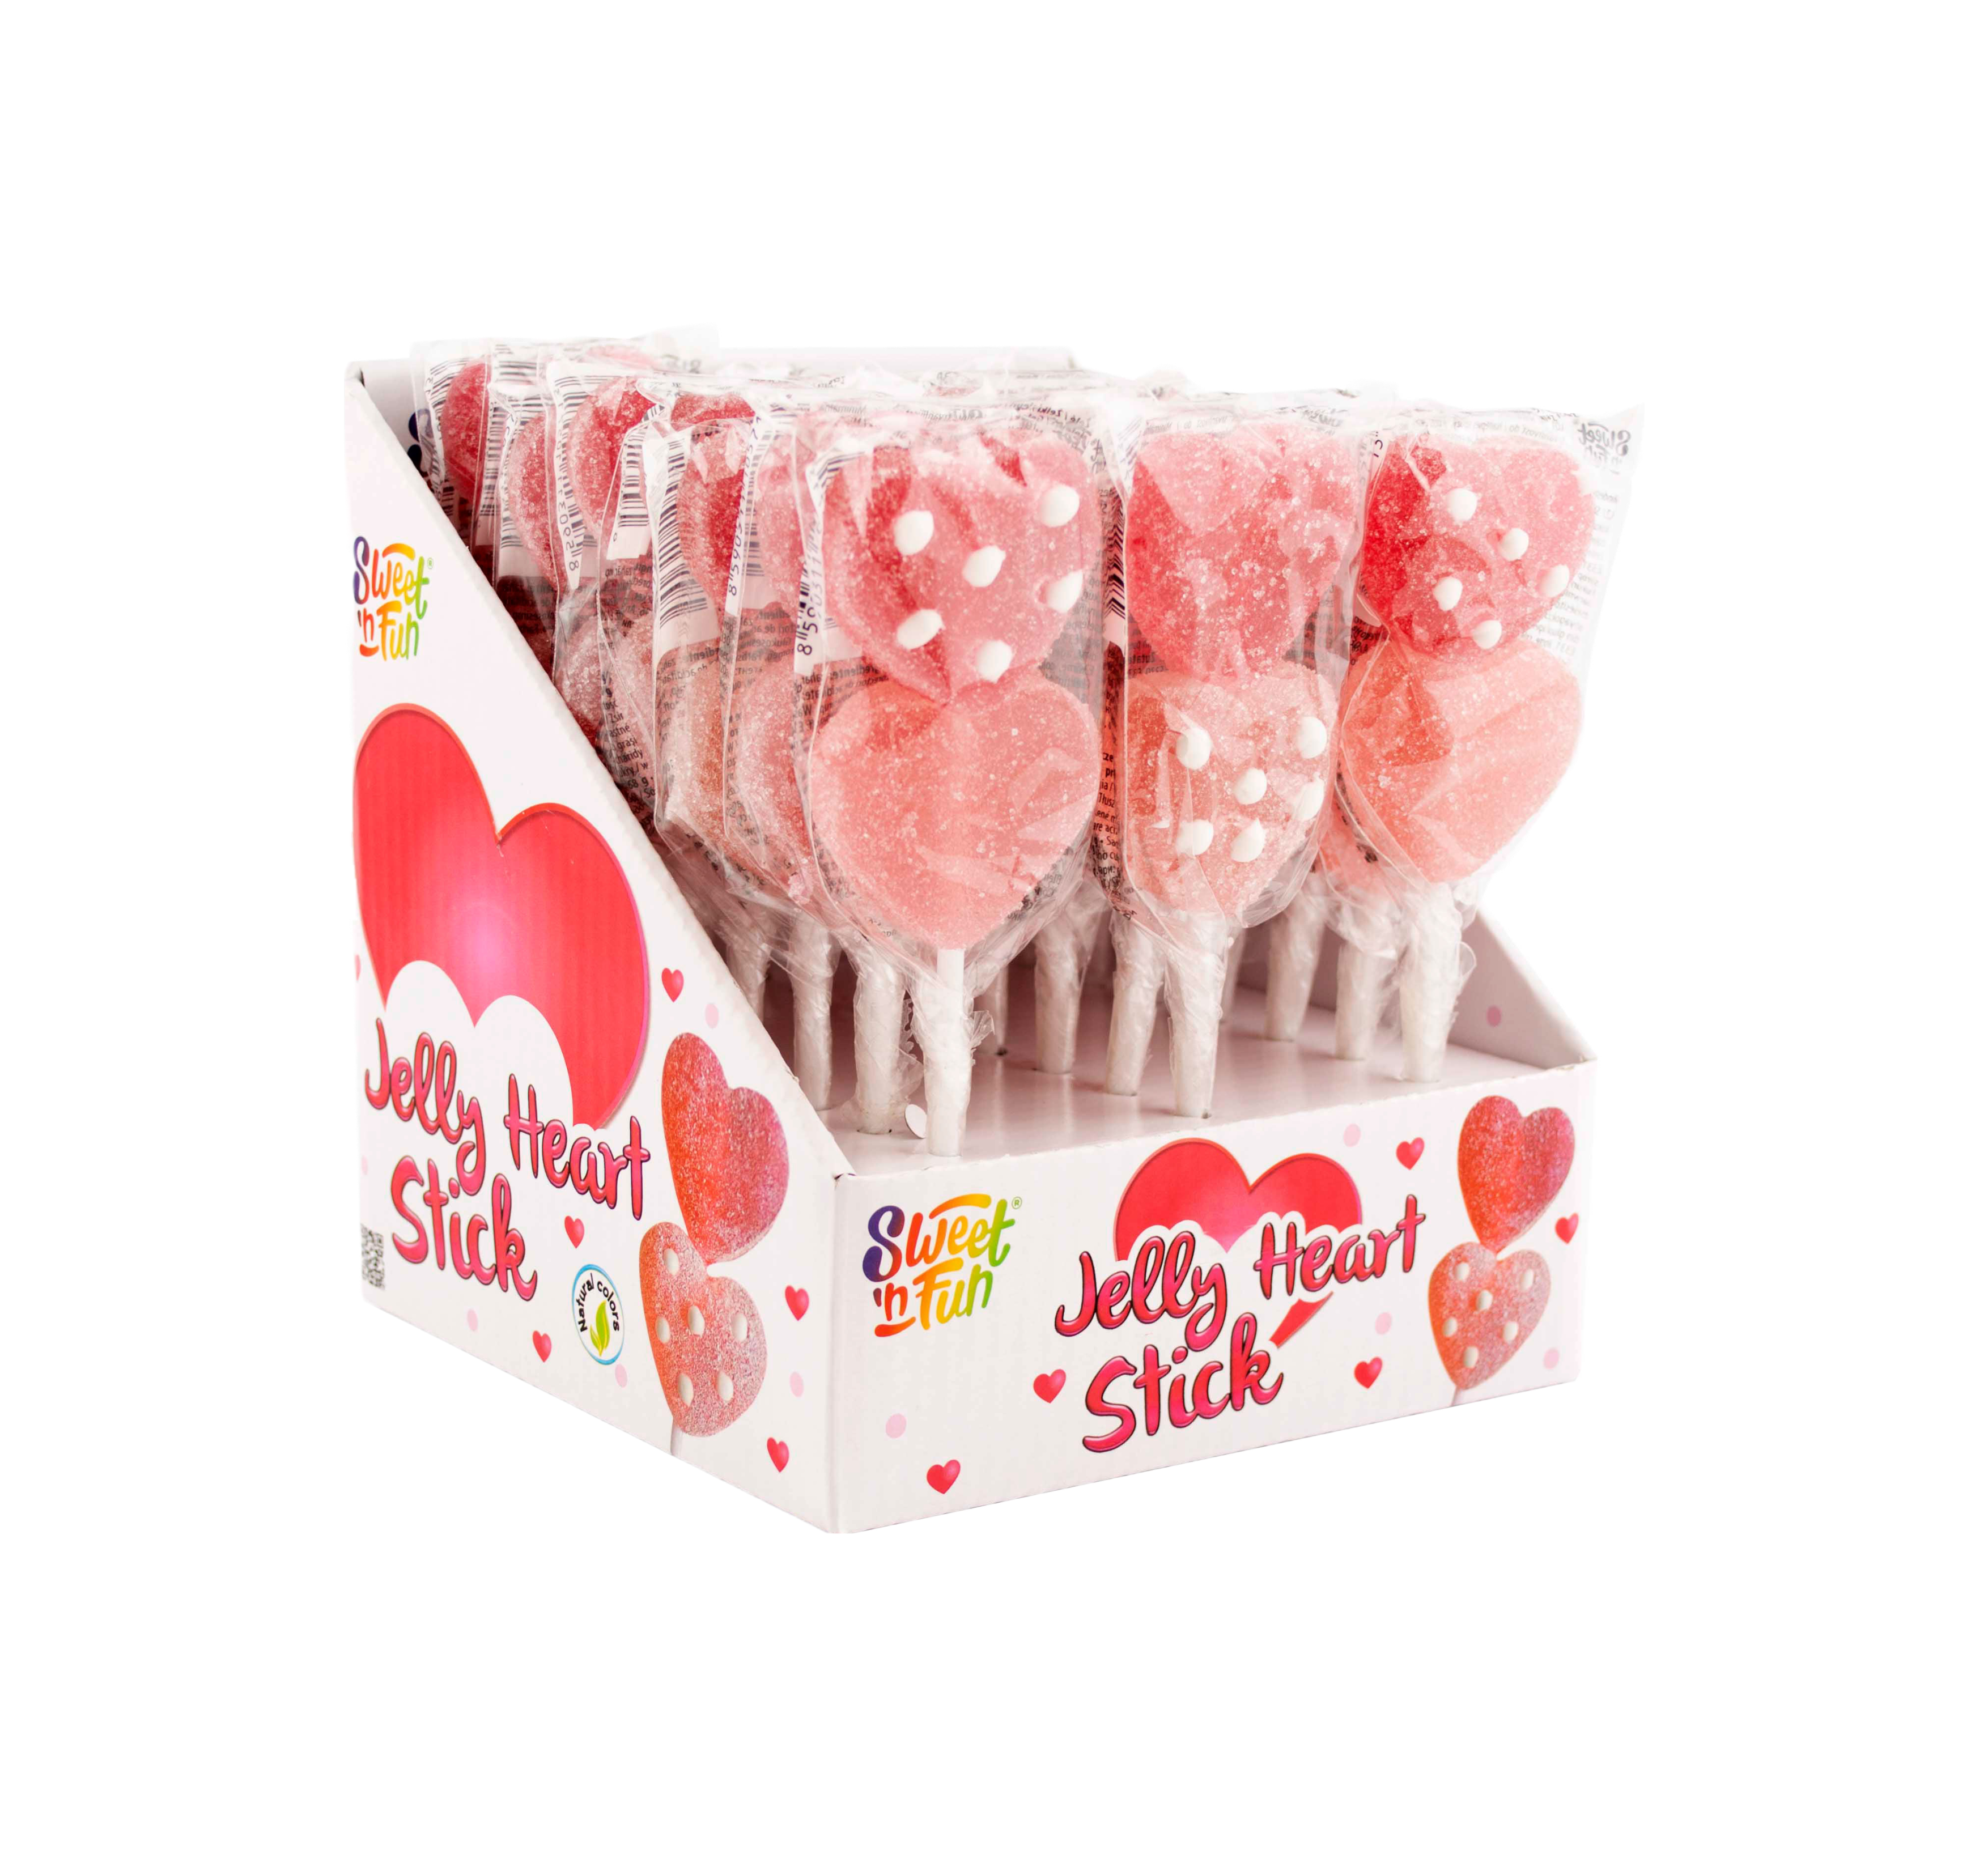 Jelly hearts stick želé lízanka 30 g